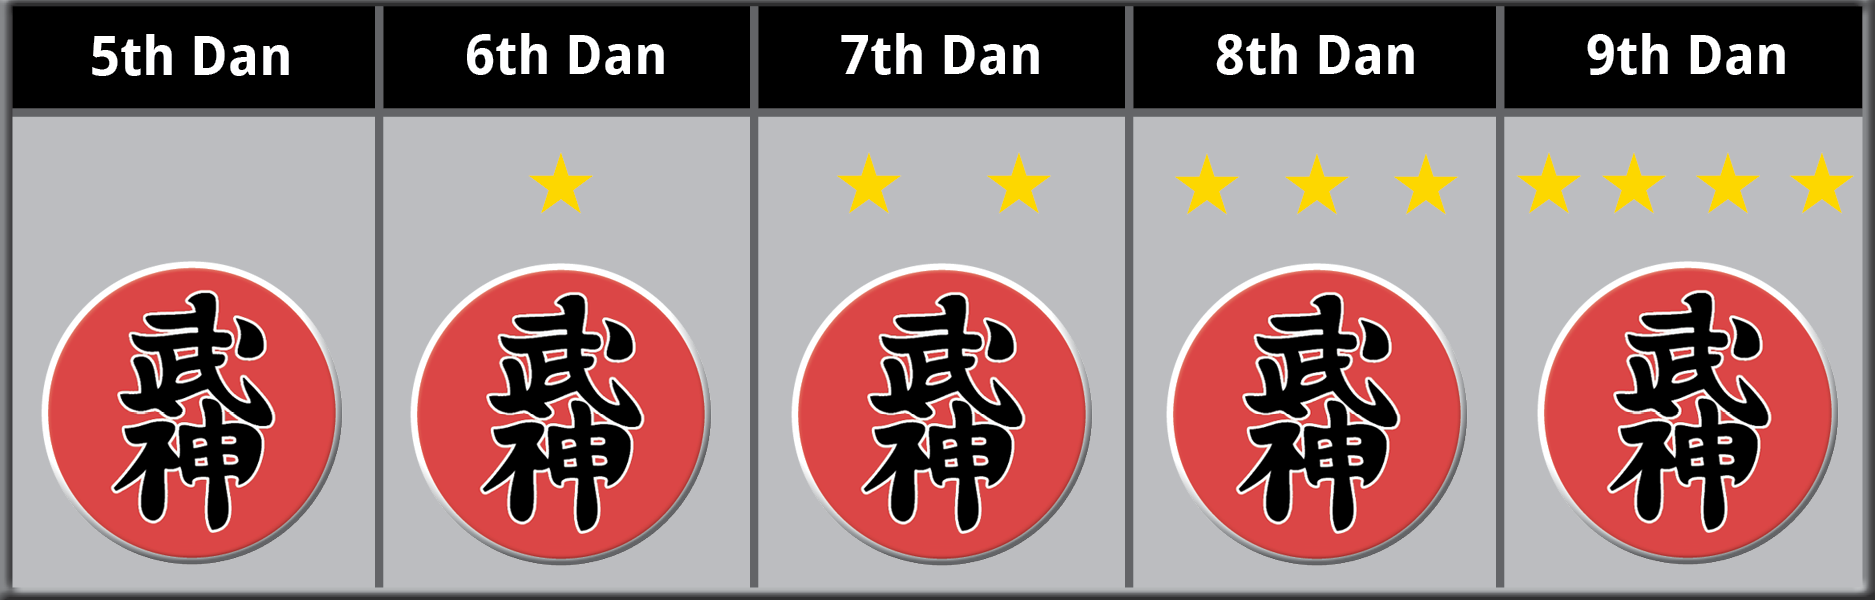 Shidoshi Ranking